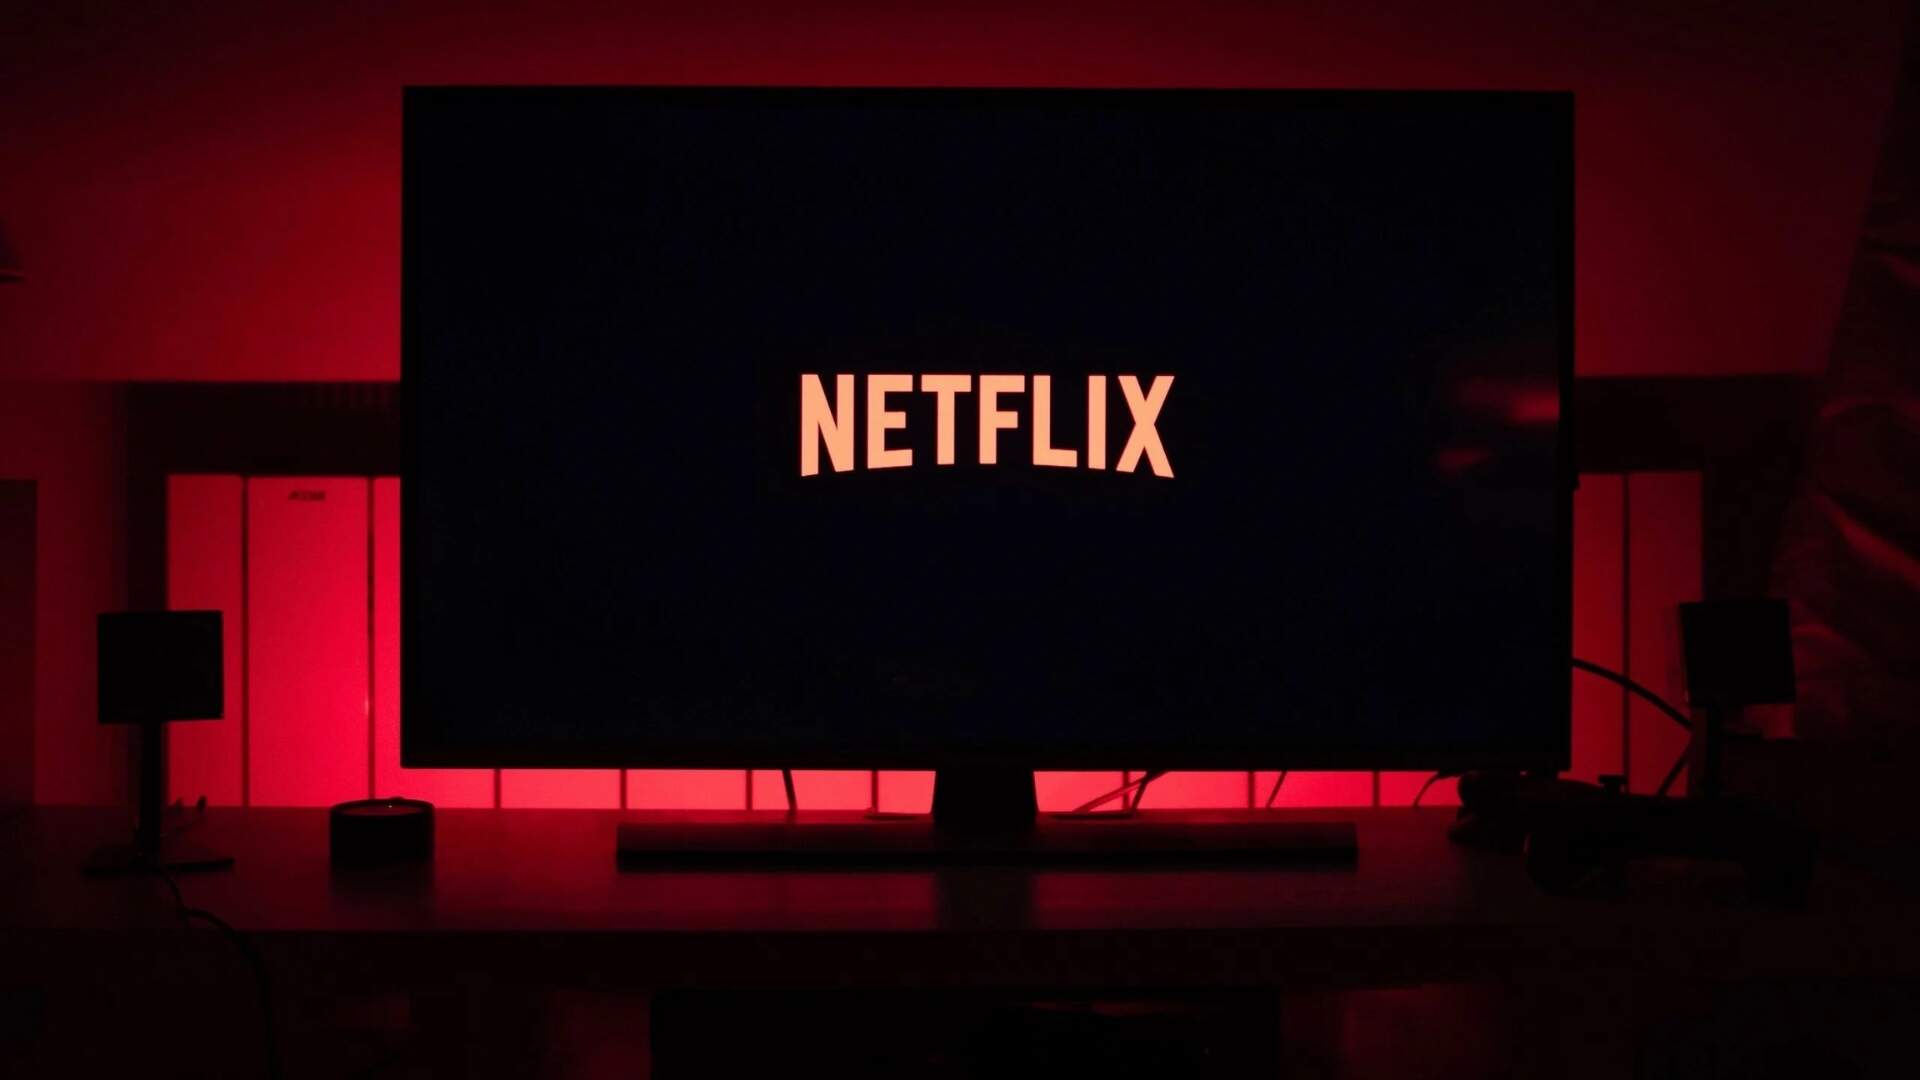 Está falindo? Netflix cancela opção de plano básico no Brasil e atitude  preocupa usuários do streaming - Metropolitana FM